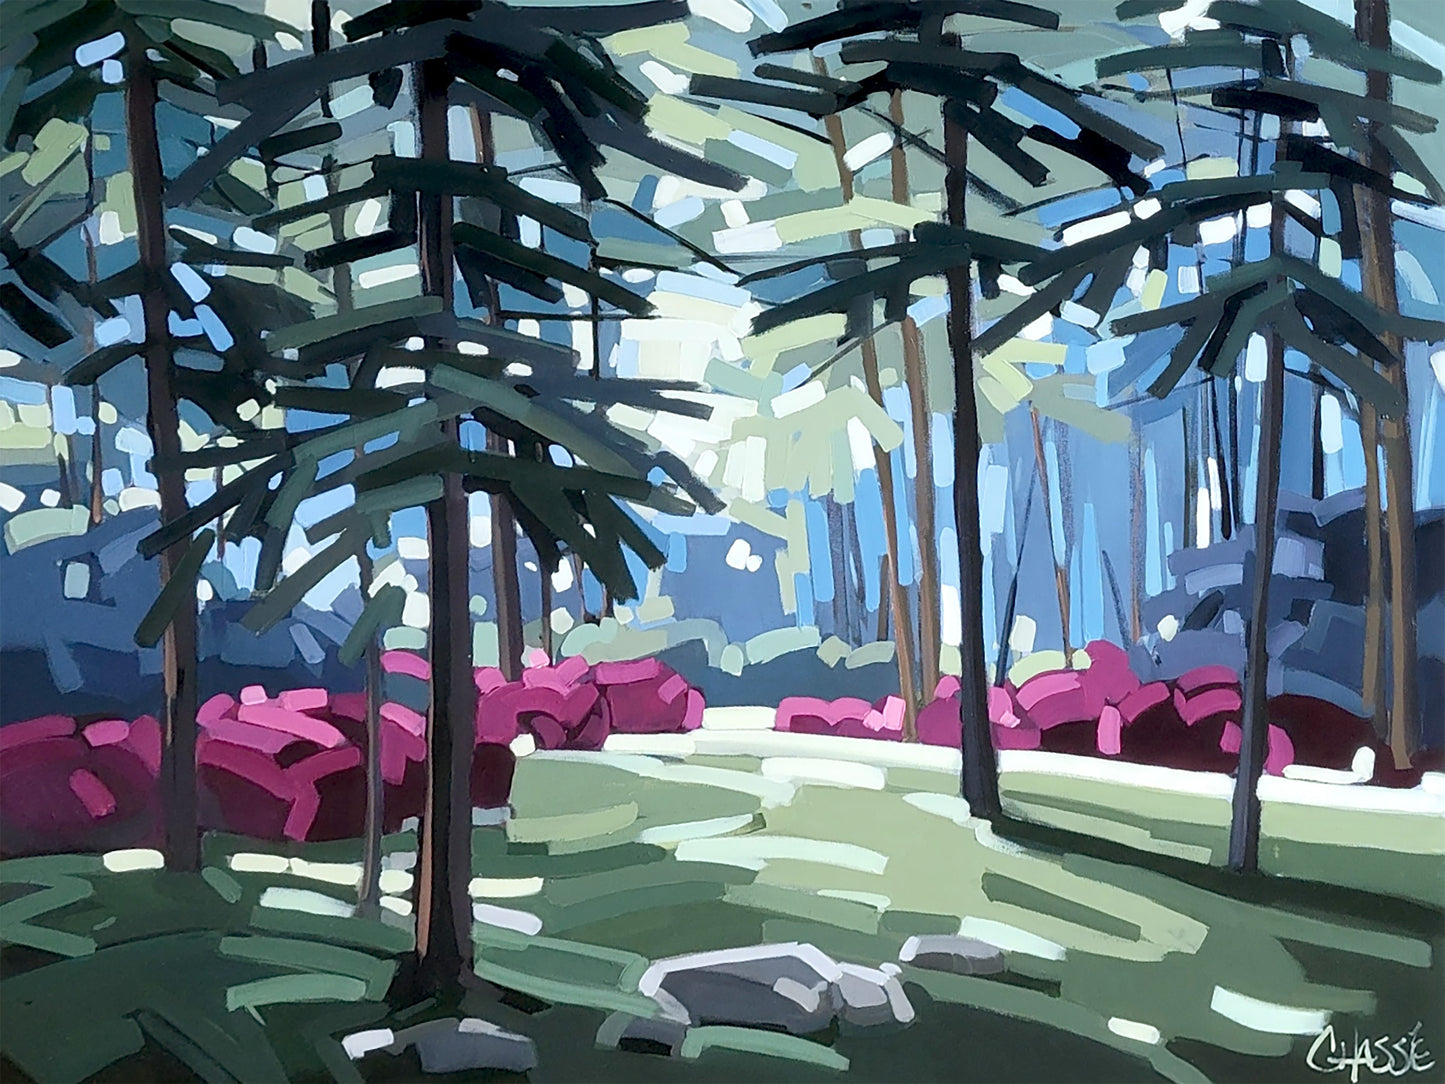 Retrouvez votre lumière intérieure grâce à cette toile de l'artiste peintre canadienne Martine Chassé. La forêt de conifères, les jeux d'ombres et de lumières ainsi que les couleurs apaisantes recréent une atmosphère enveloppante et inspirante. Accrochez-la et revivez!